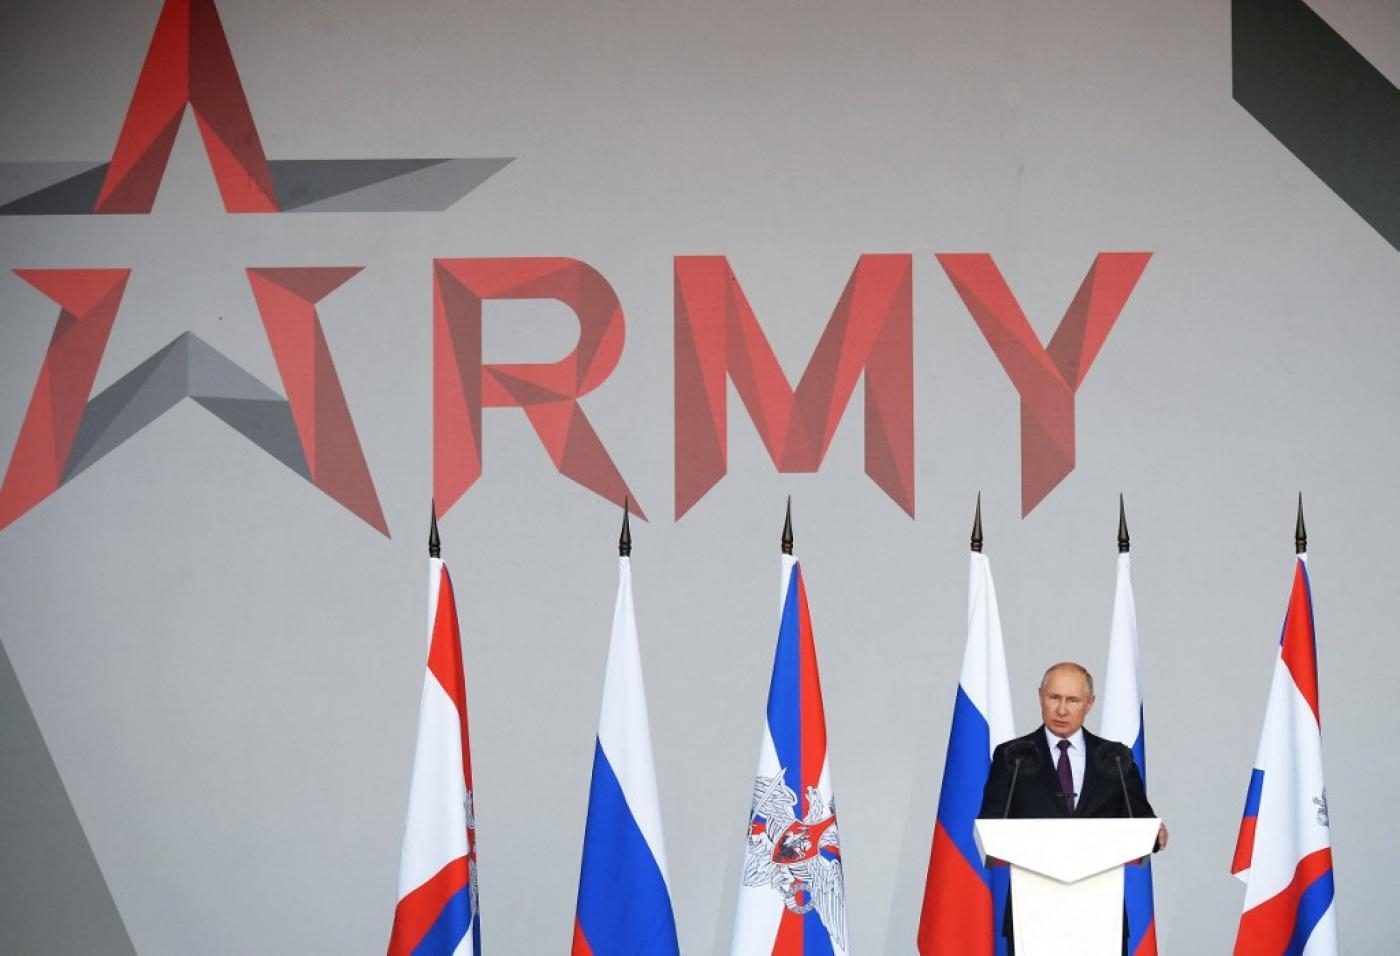 Le président russe Vladimir Poutine prononce un discours au Forum international militaro-technique « Army 2021 » à Koubinka, dans la banlieue de Moscou, le 23 août 2021 (AFP)